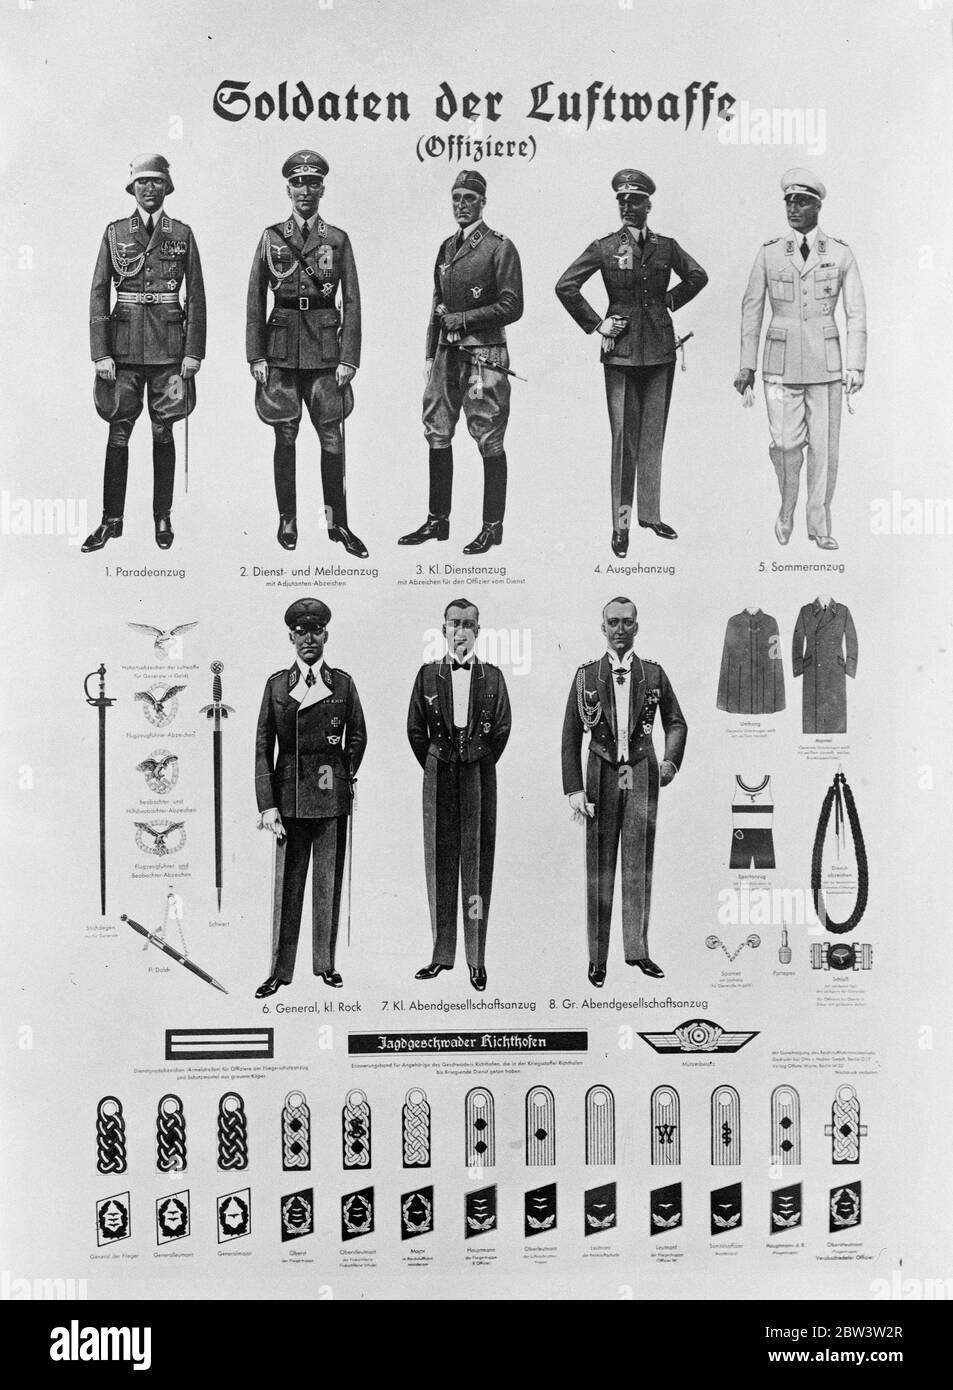 L'Allemagne montre son aviation . Des affiches sont distribuées dans tout le pays, illustrant les différents uniformes portés par les officiers et les insignes. 8 août 1935 Banque D'Images